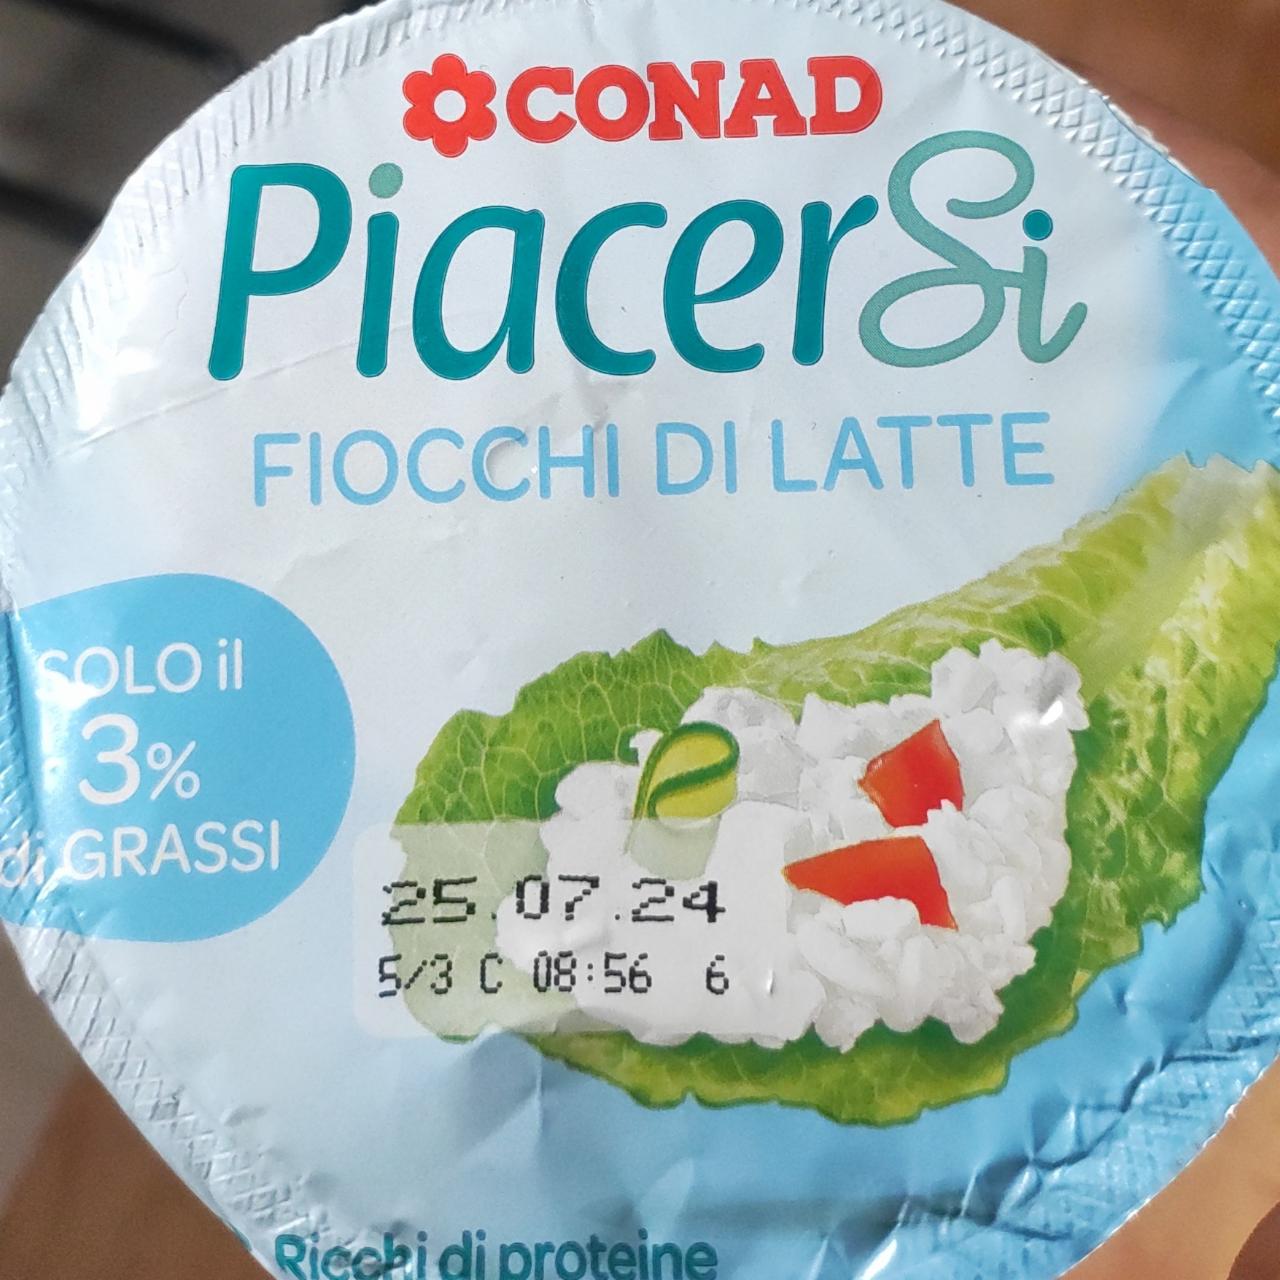 Fotografie - PiacerSi fiocchi di latte Conad